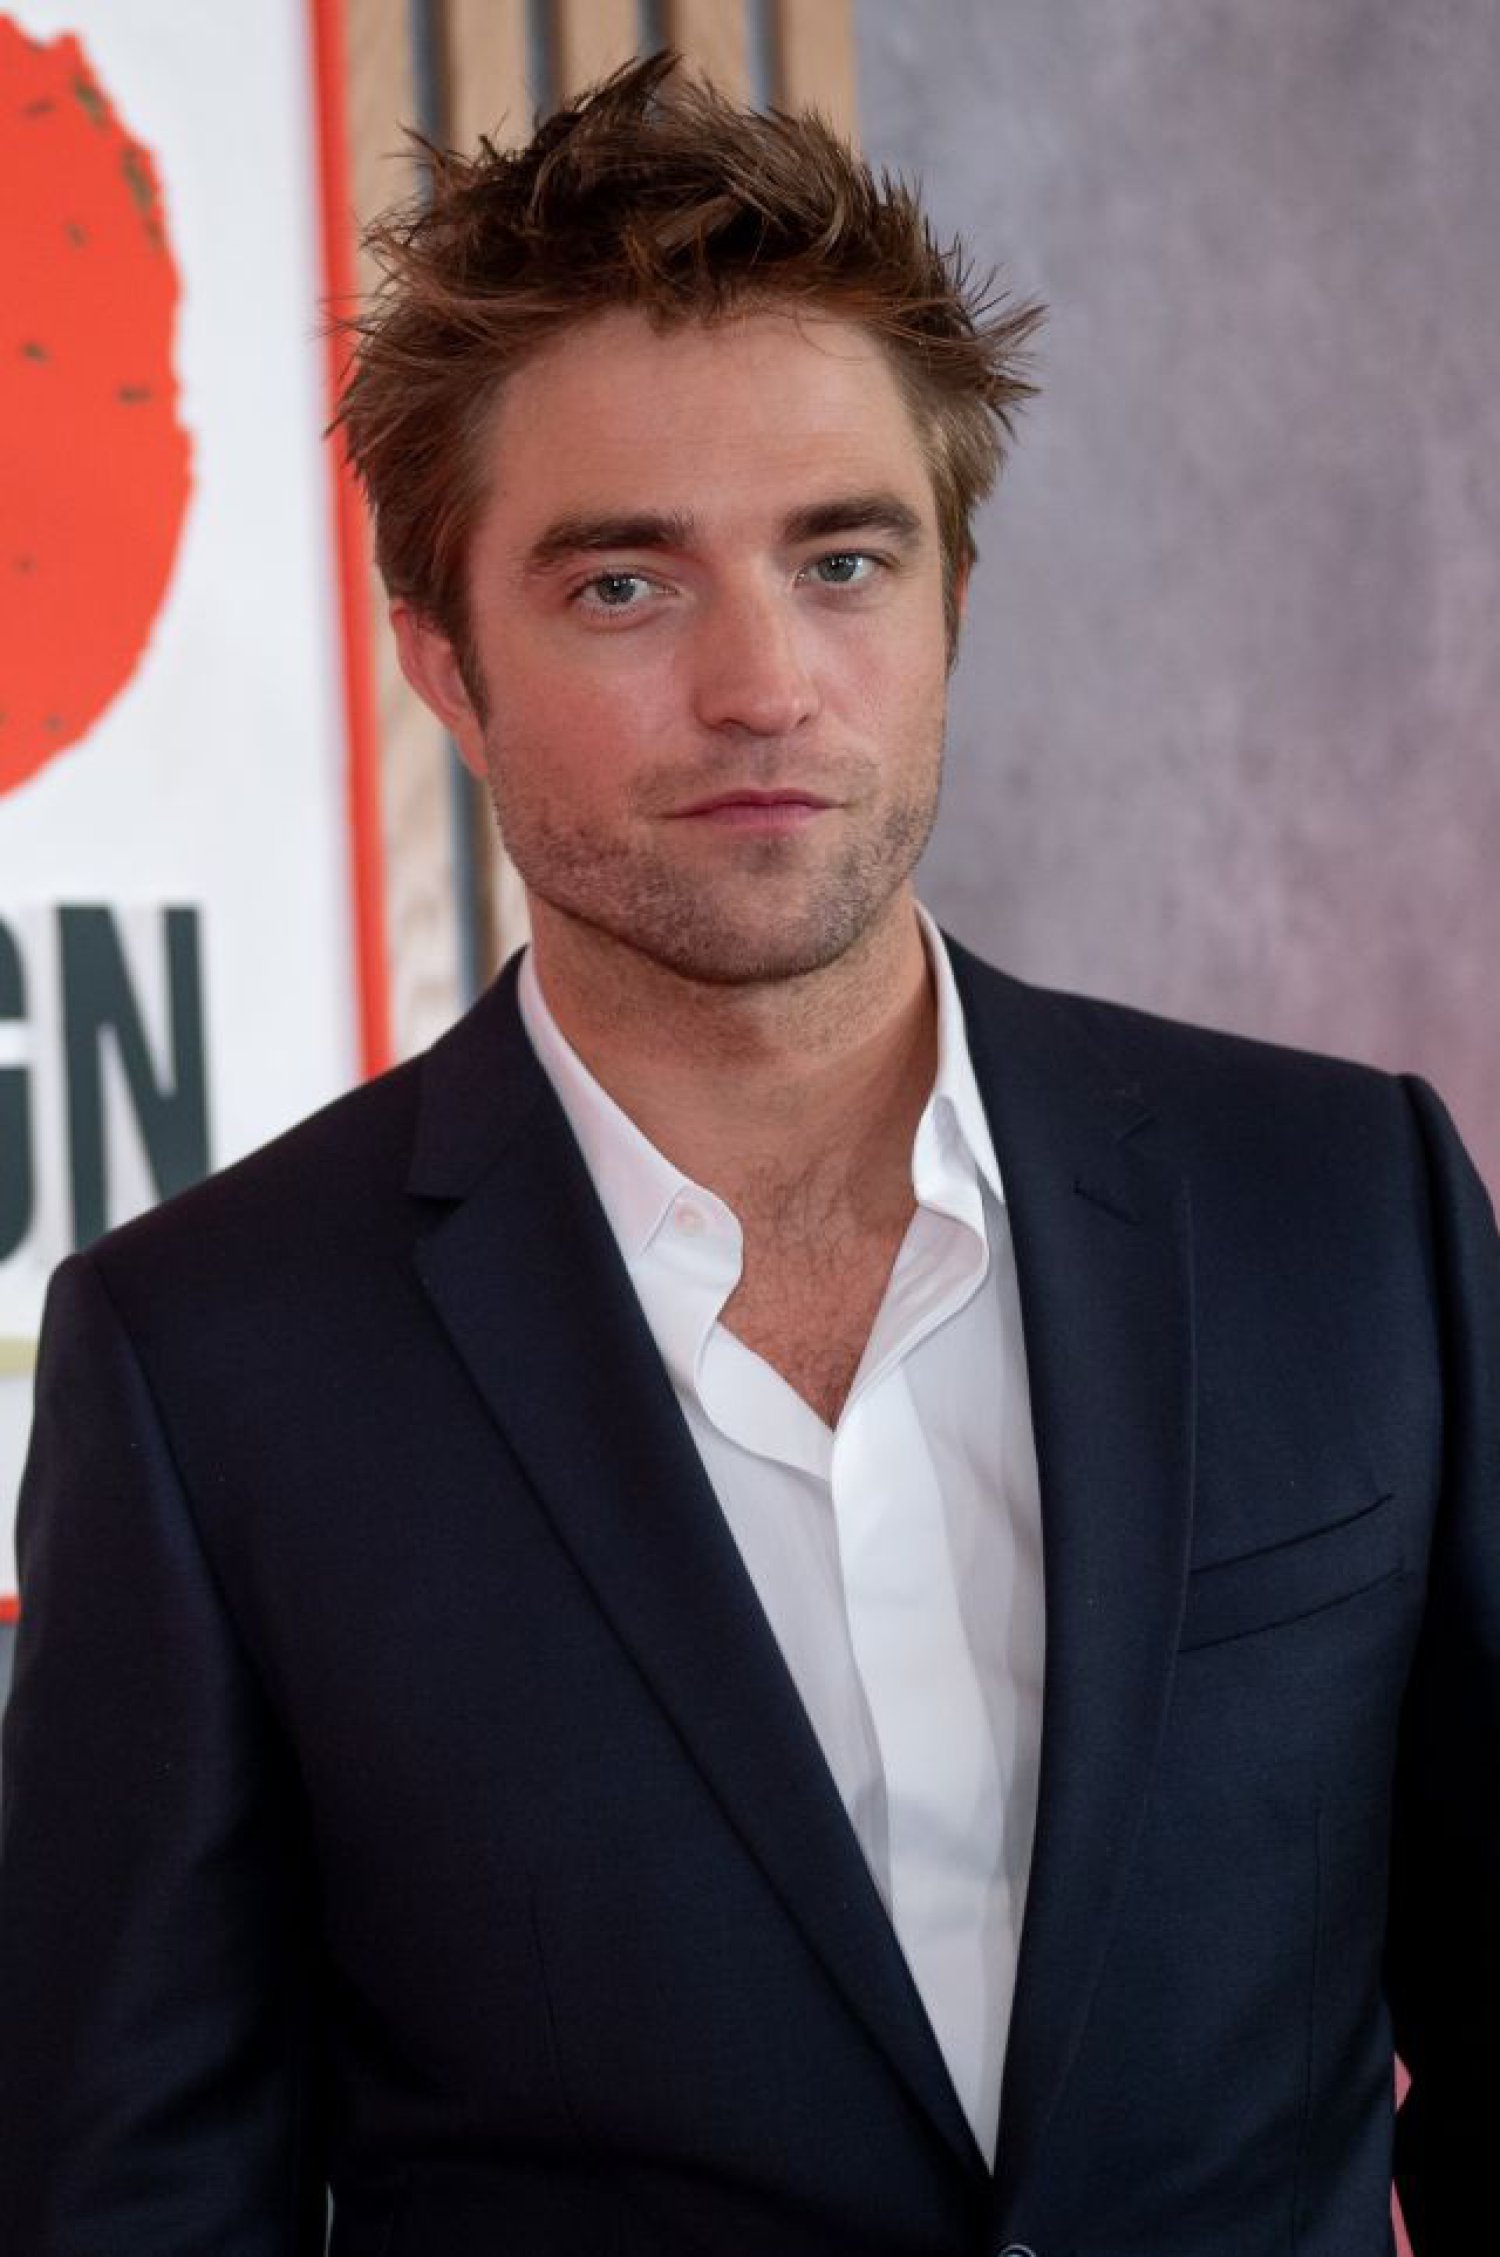 El Batman de Robert Pattinson se basa en los 70 y Nirvana, según su  director: “Es una especie de drogadicto” | Cine y Televisión | LOS40